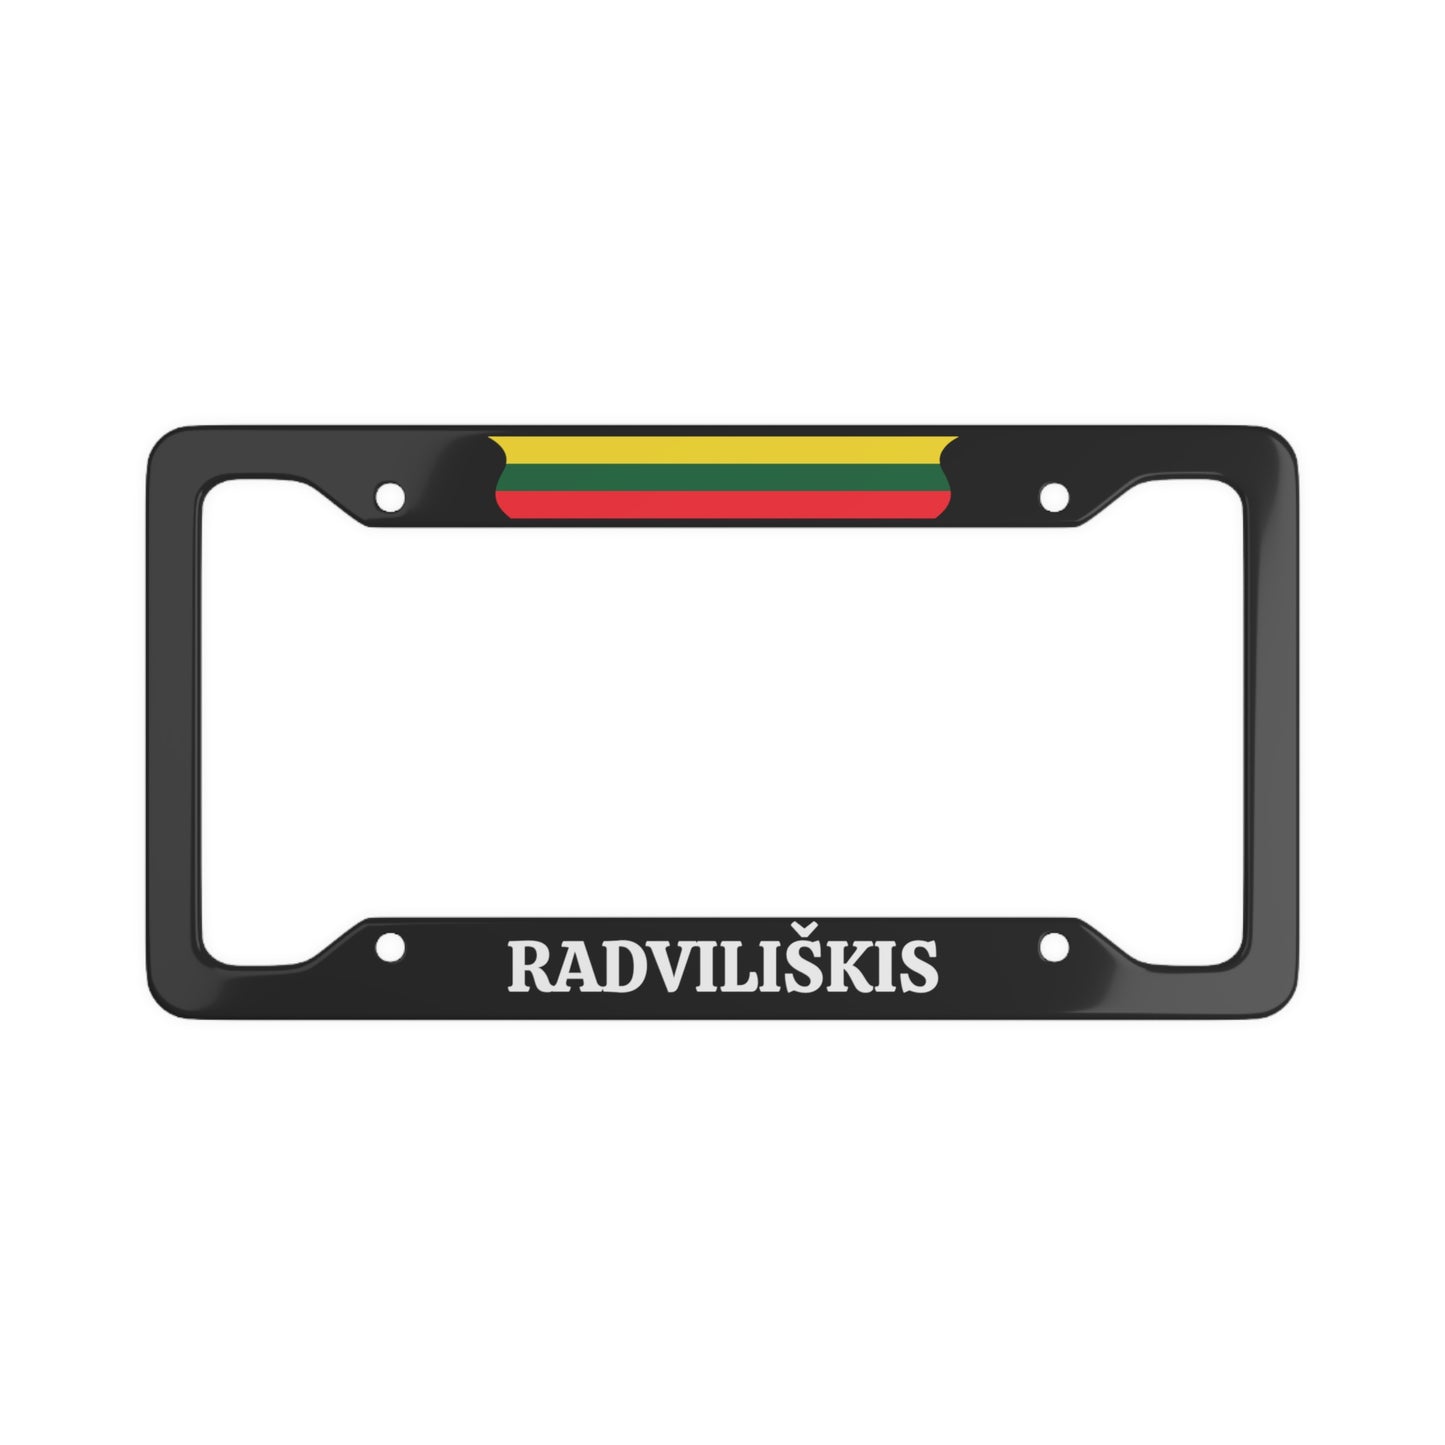 RADVILIŠKIS, Lithuania Flag License Plate Frame